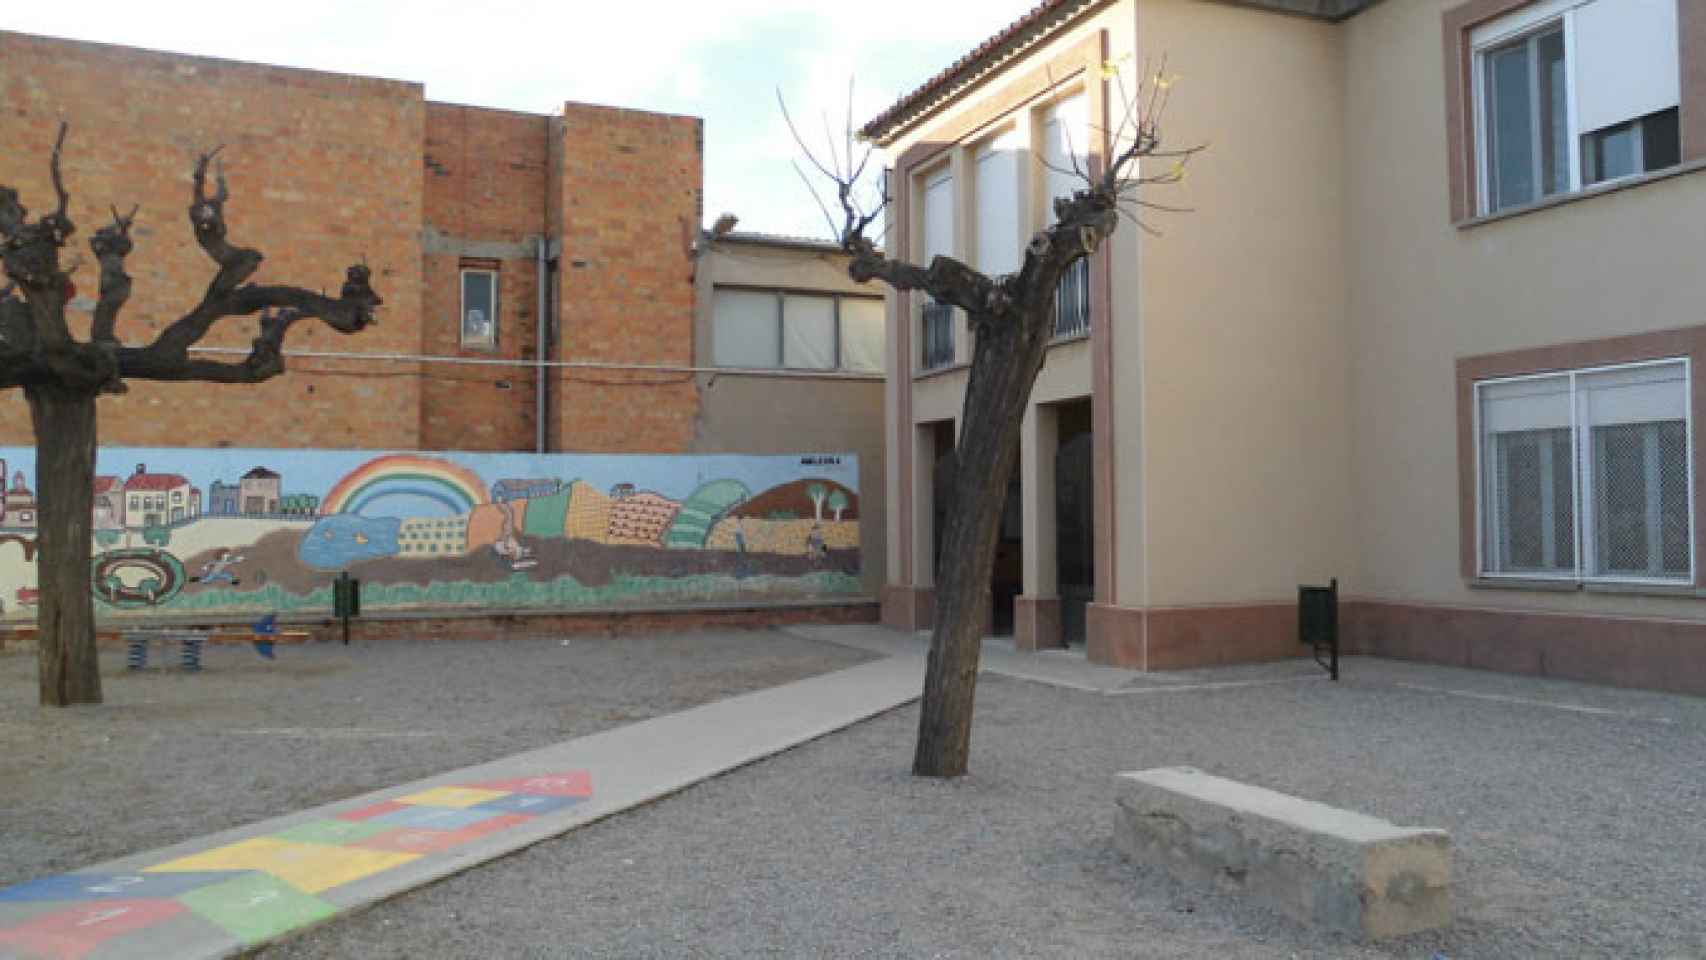 Patio de la escuela Santa Creu de Calafell (Tarragona), afectada por legionela / CG